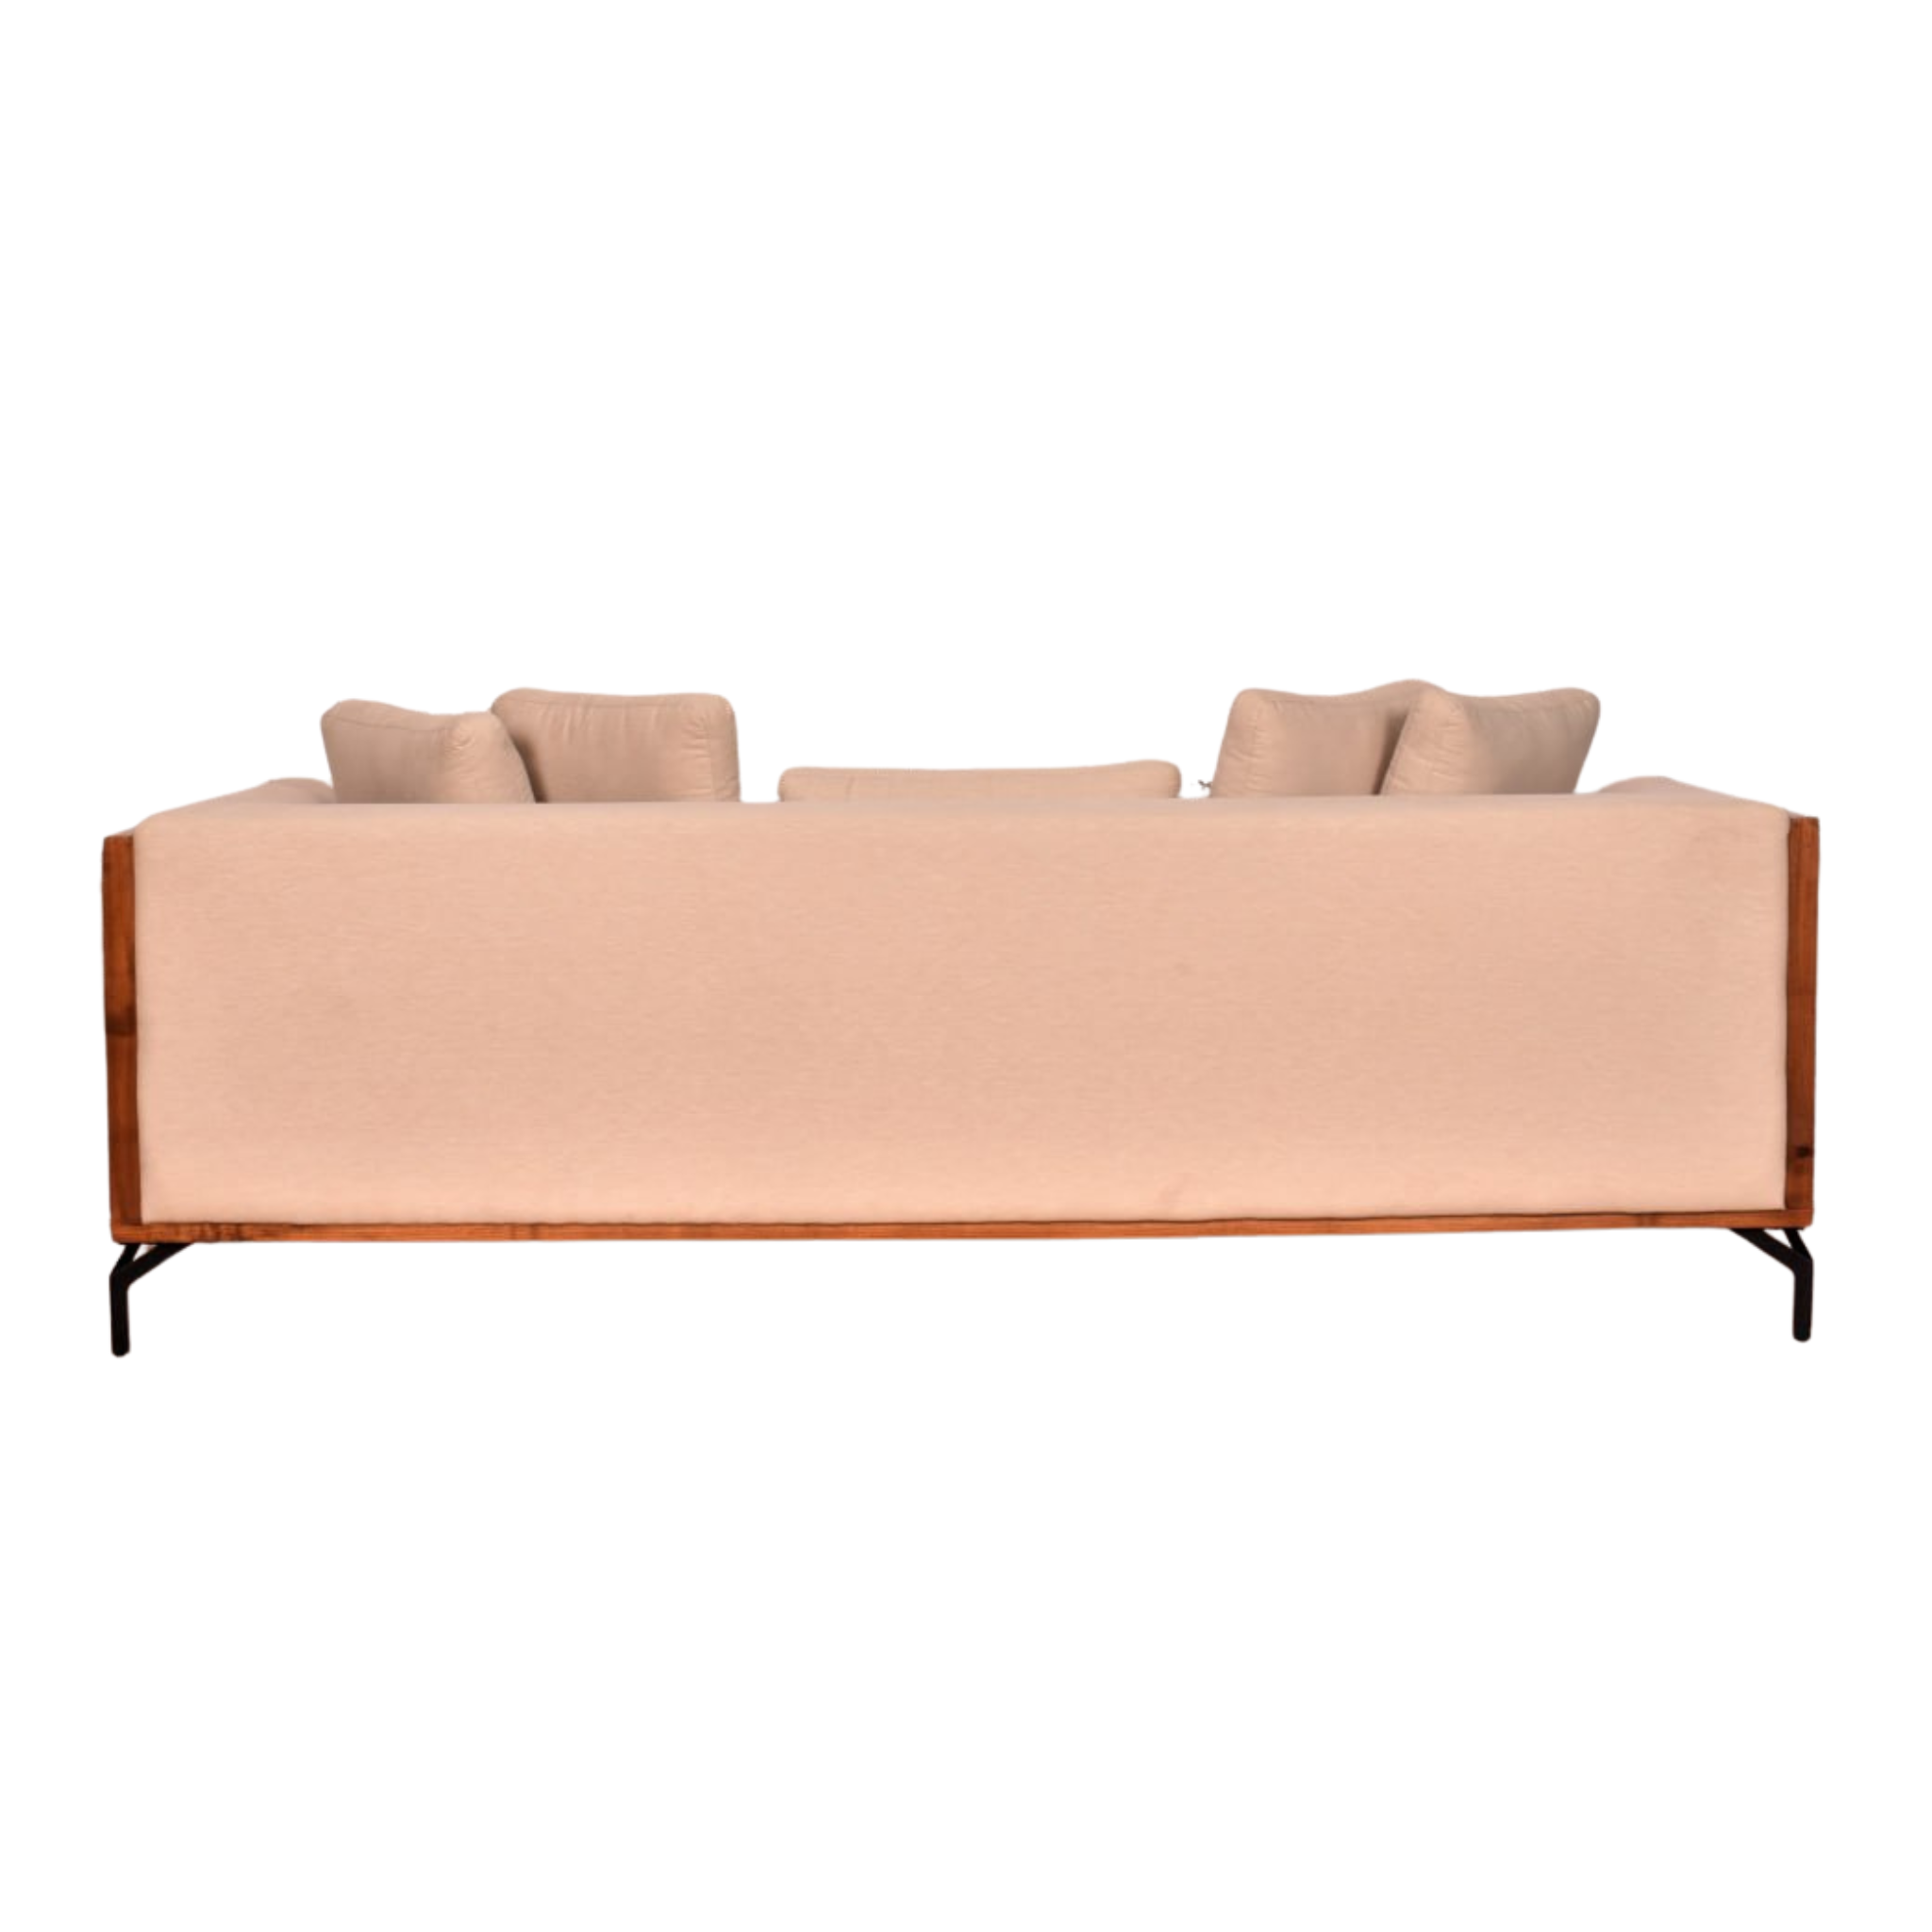 Juno sofa